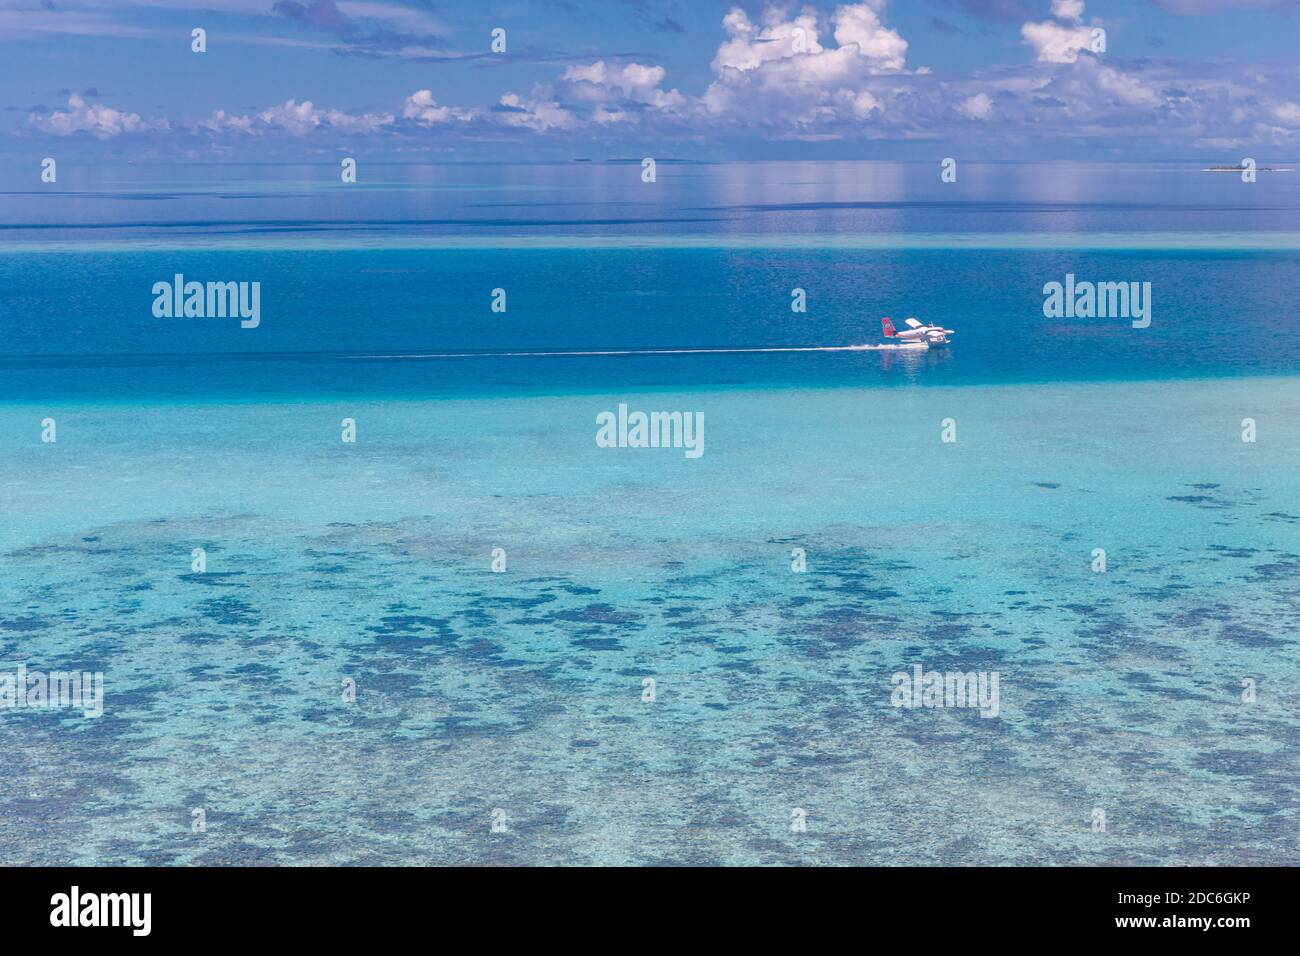 Vue aérienne sur les îles tropicales. Île des Maldives, récif de corail, paysage pittoresque de la nature, paysage marin. Vue imprenable sur les drones aériens Banque D'Images